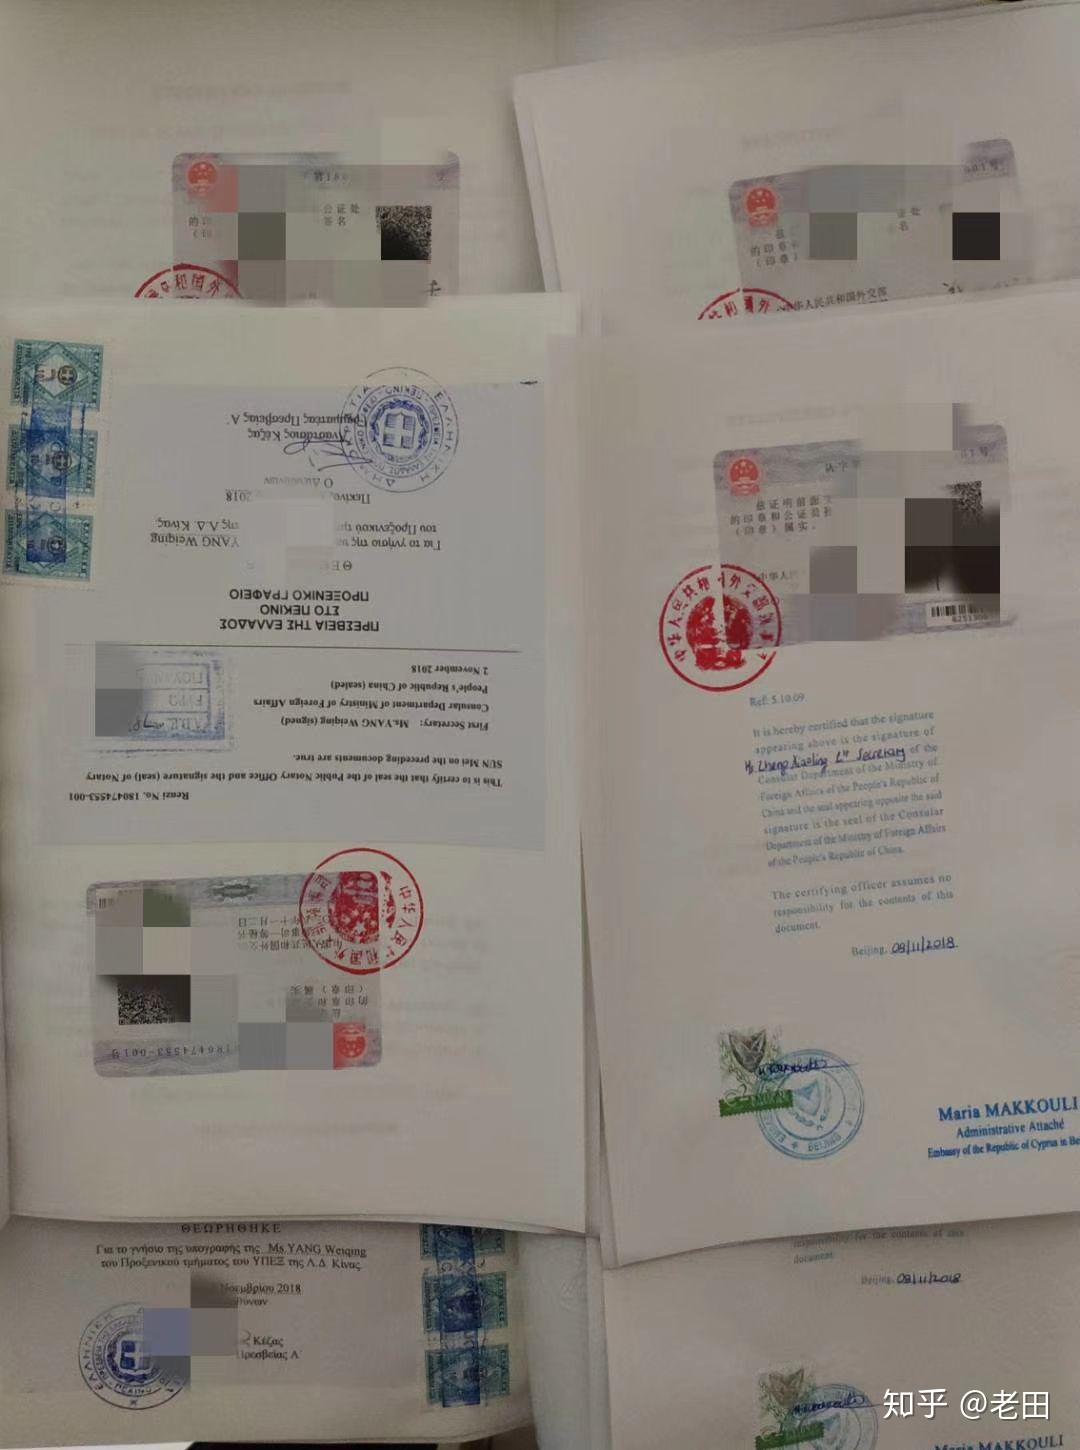 希腊公证书的使馆双认证是什么?塞浦路斯使馆